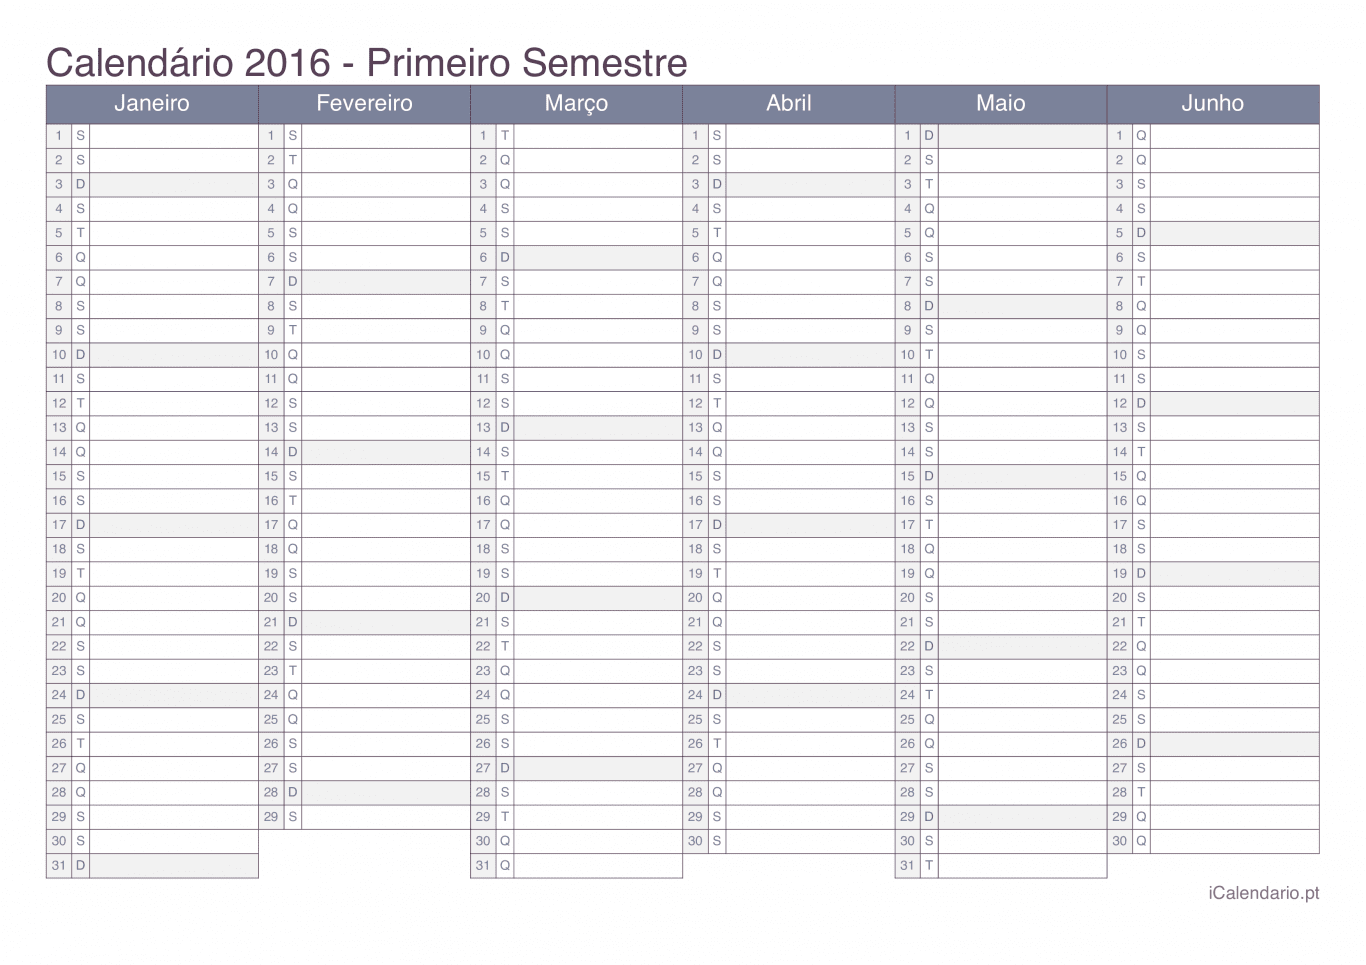 Calendário por semestre 2016 - Office